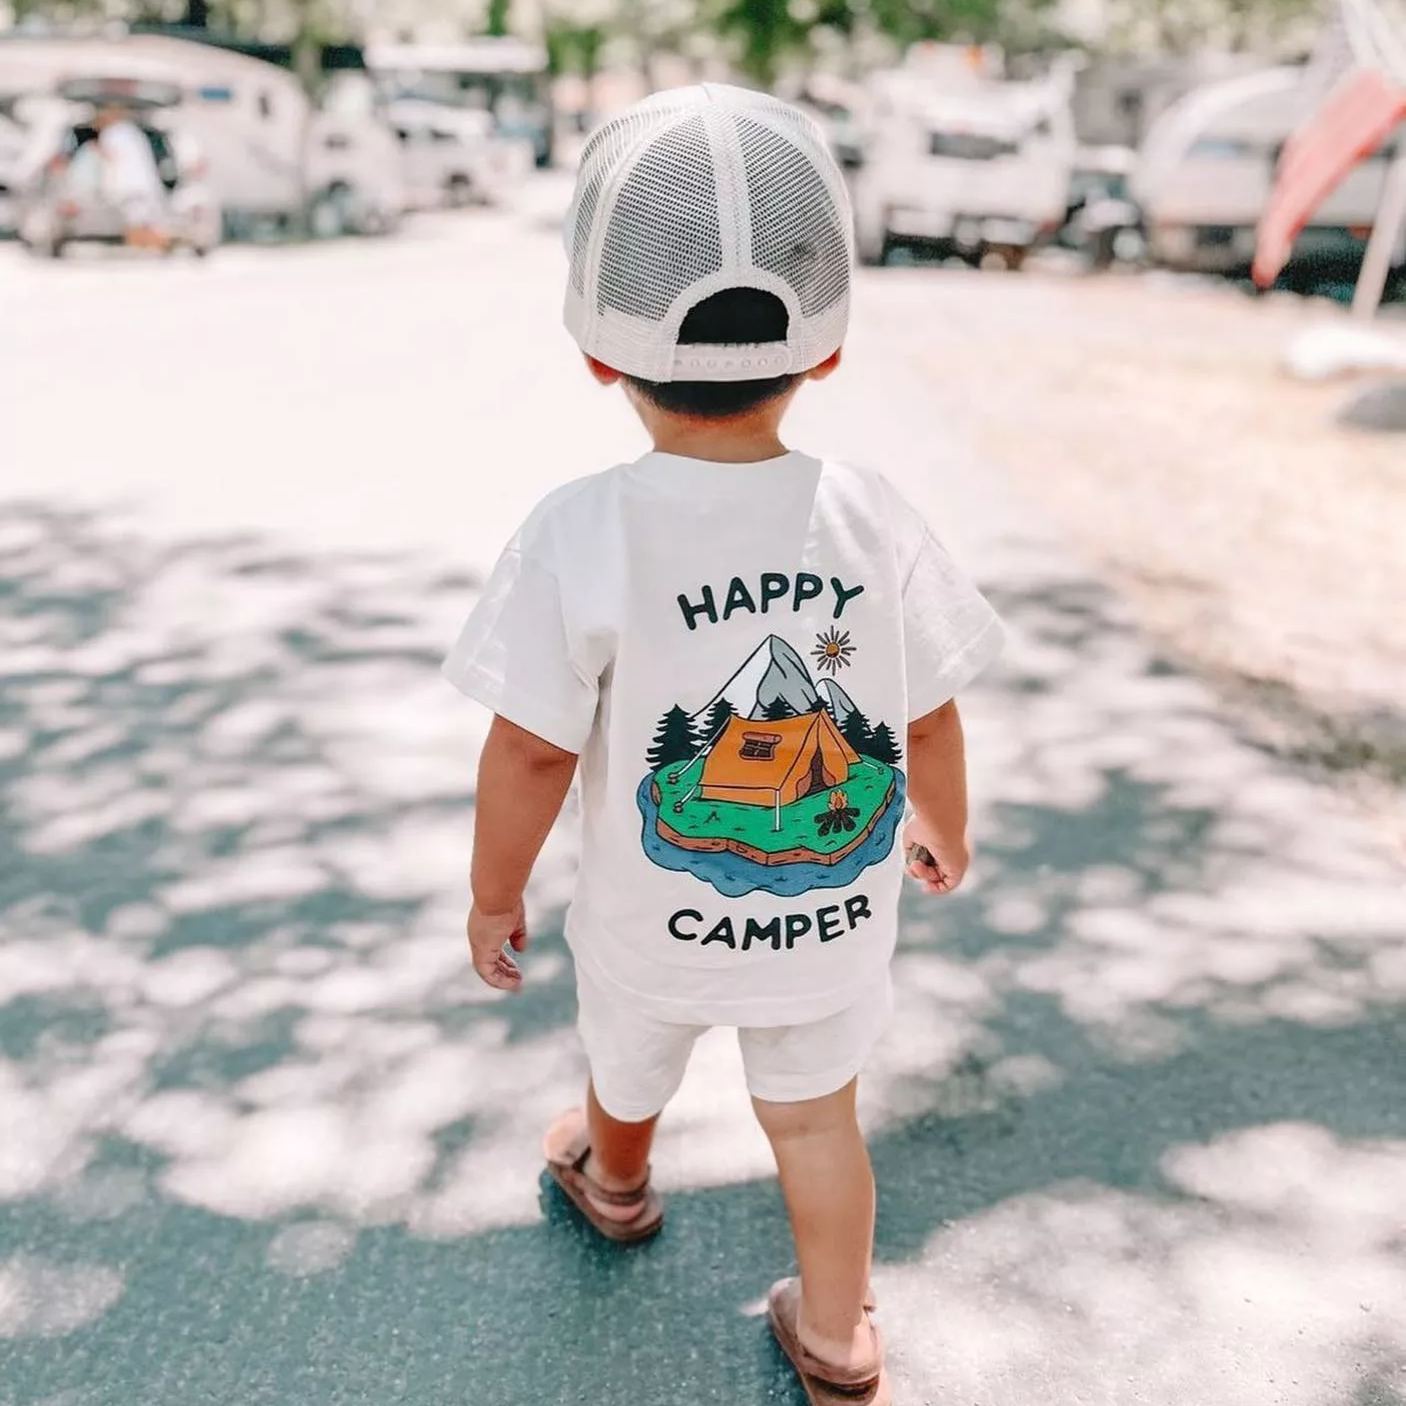 Baby Happy Camper Set